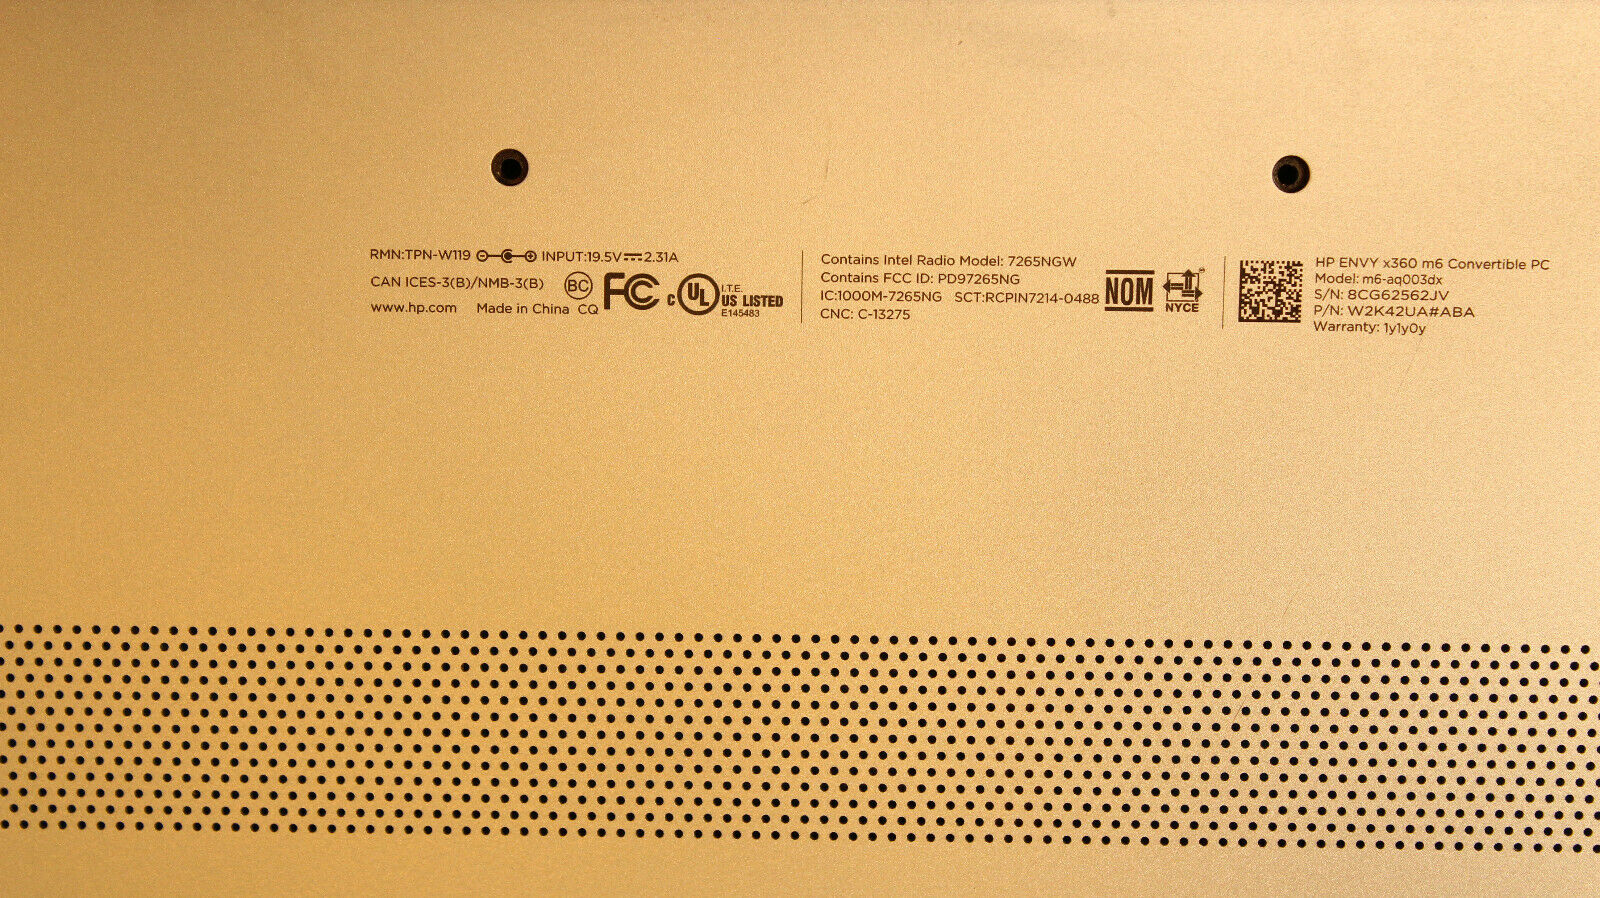 HP ENVY x360 m6-aq003dx 15.6